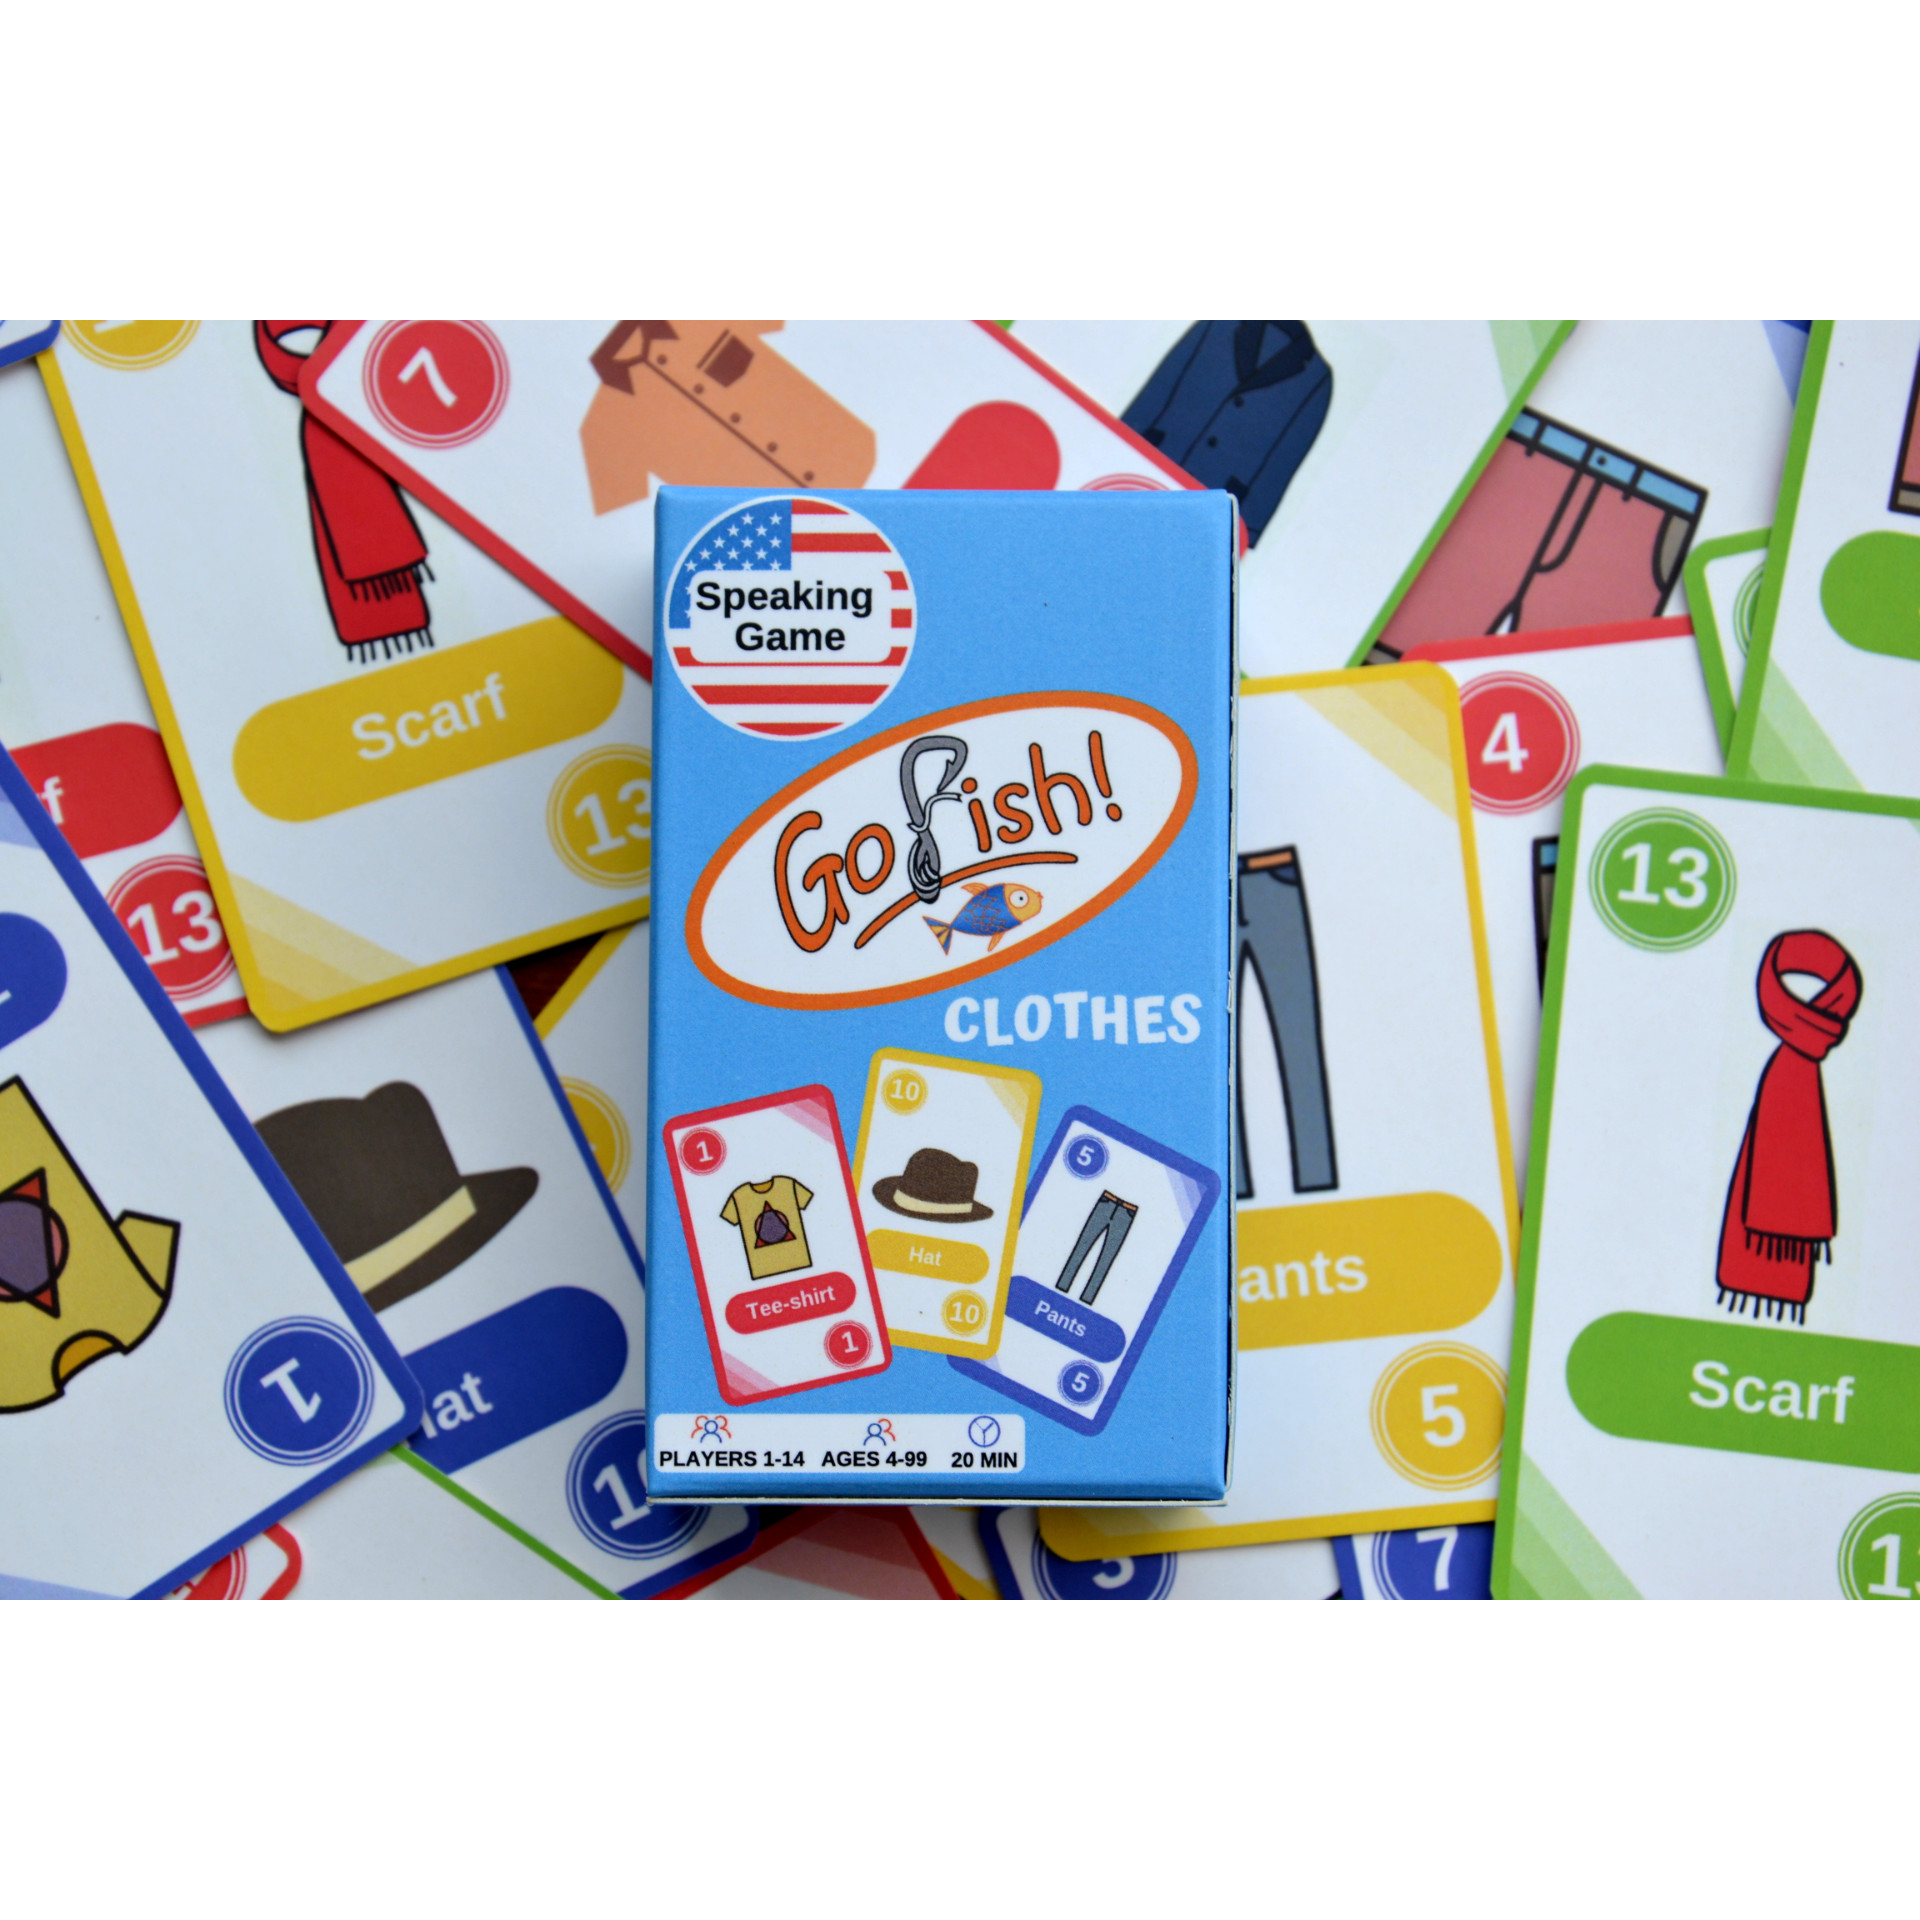 Go Fish Games - Boardgames for speaking practice - Trò chơi luyện kỹ năng nói tiếng Anh, nhiều chủ đề, phù hợp nhiều độ tuổi